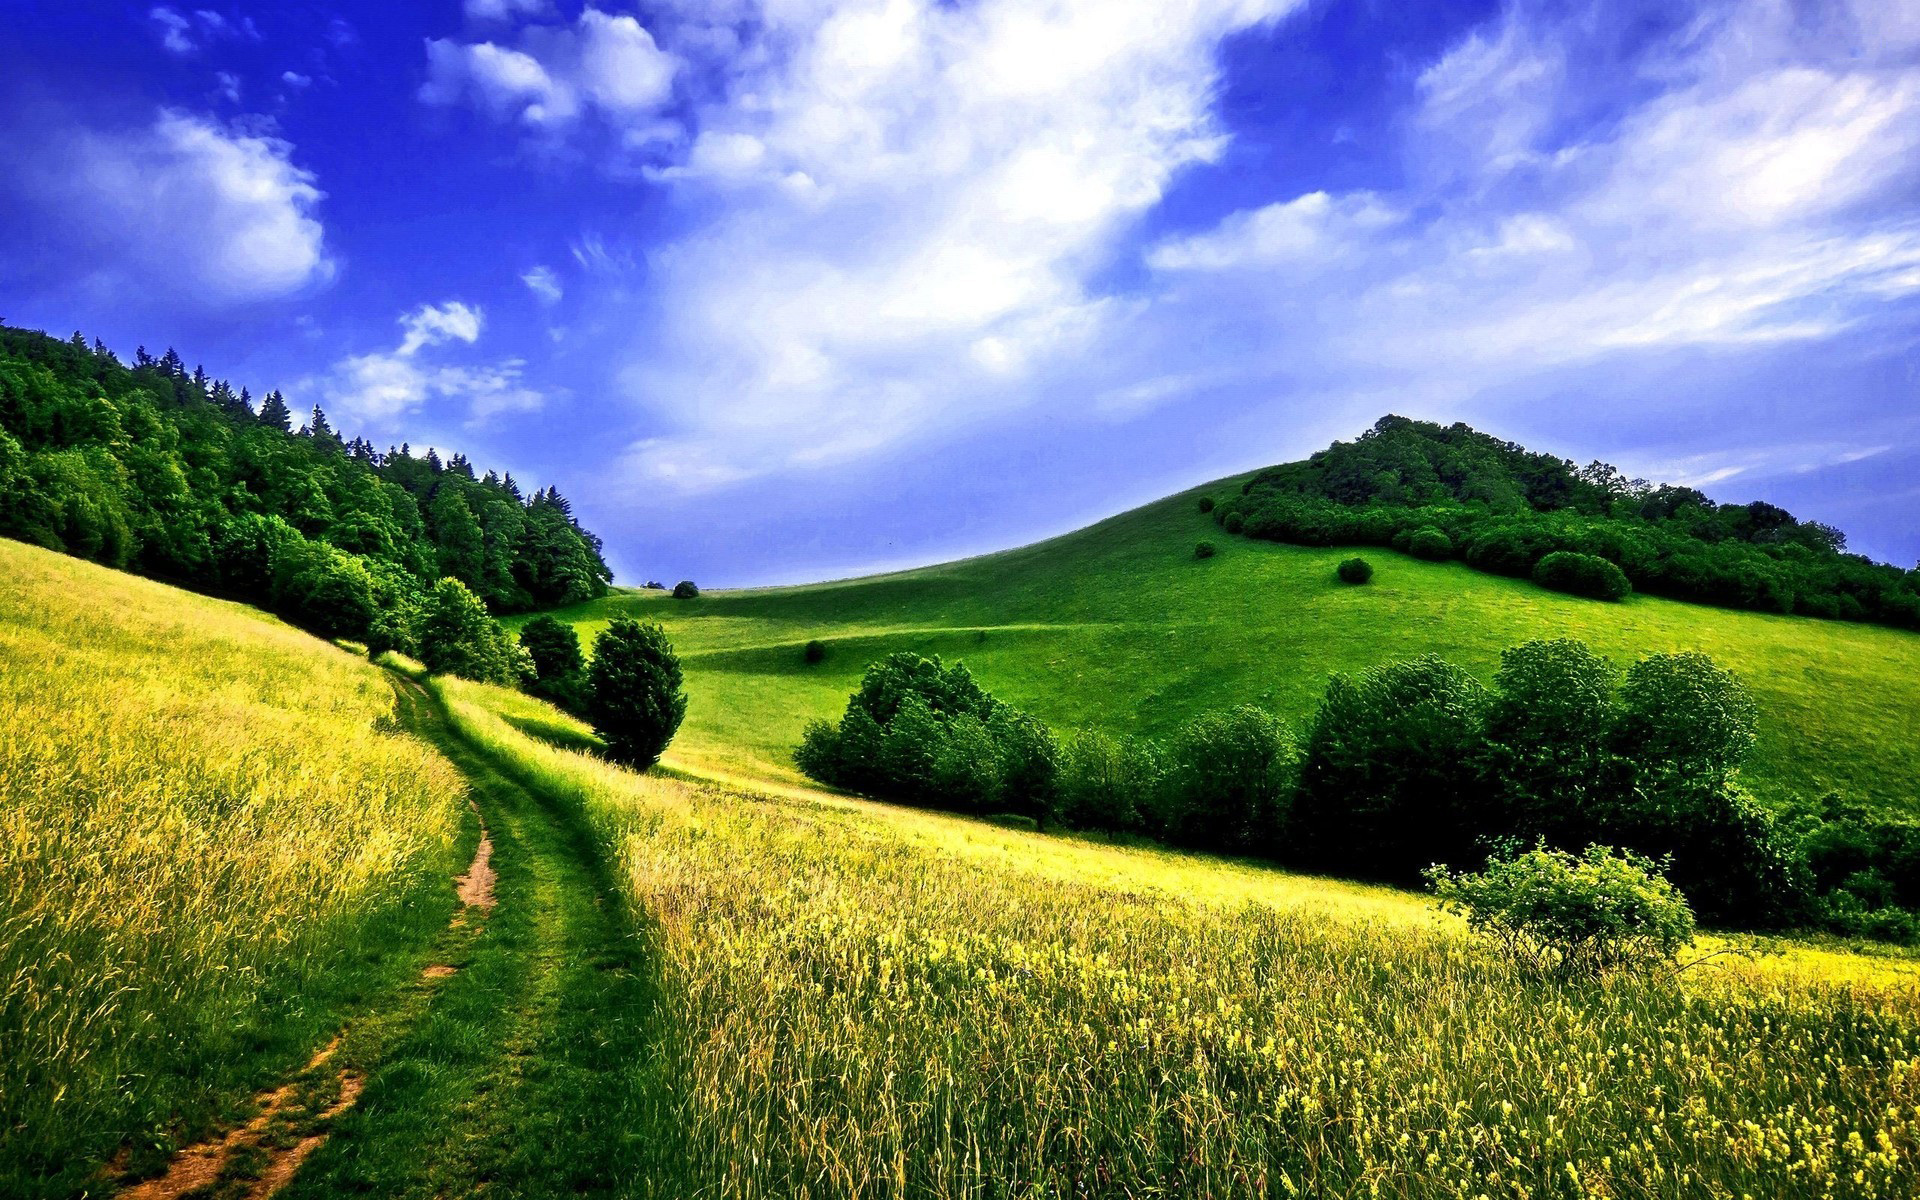 Country Road In A Green Field HD Wallpaper For Desktop